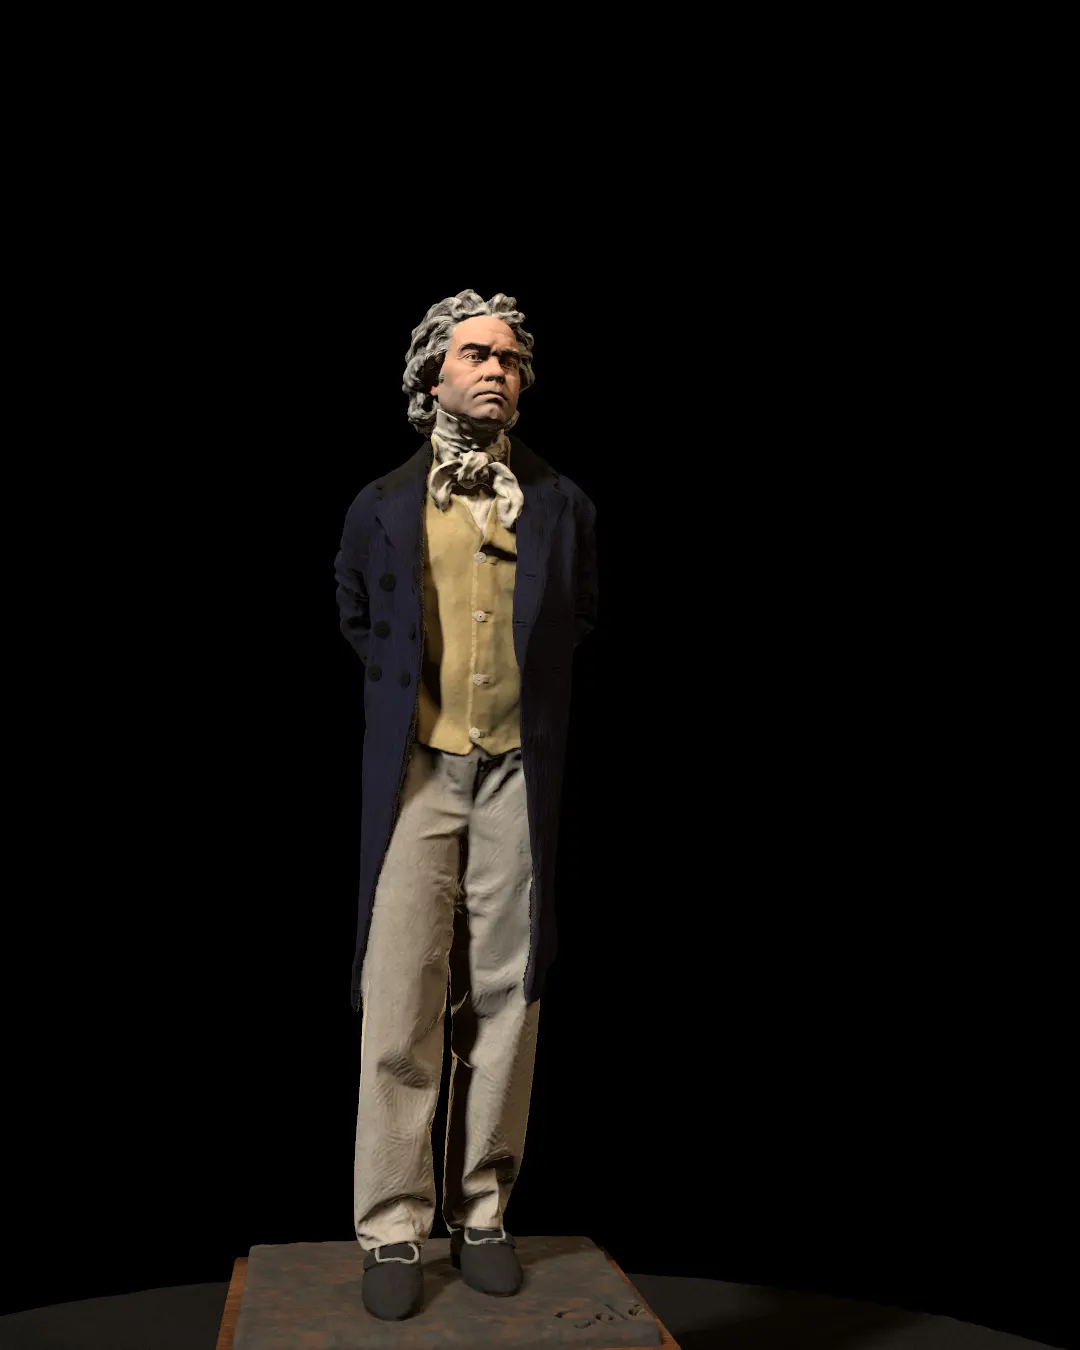 Ludwig-van-Beethoven-statue/Rendering-of-Ludwig-van-Beethoven-statue-modeled-by-Emil-Sole-6.webp